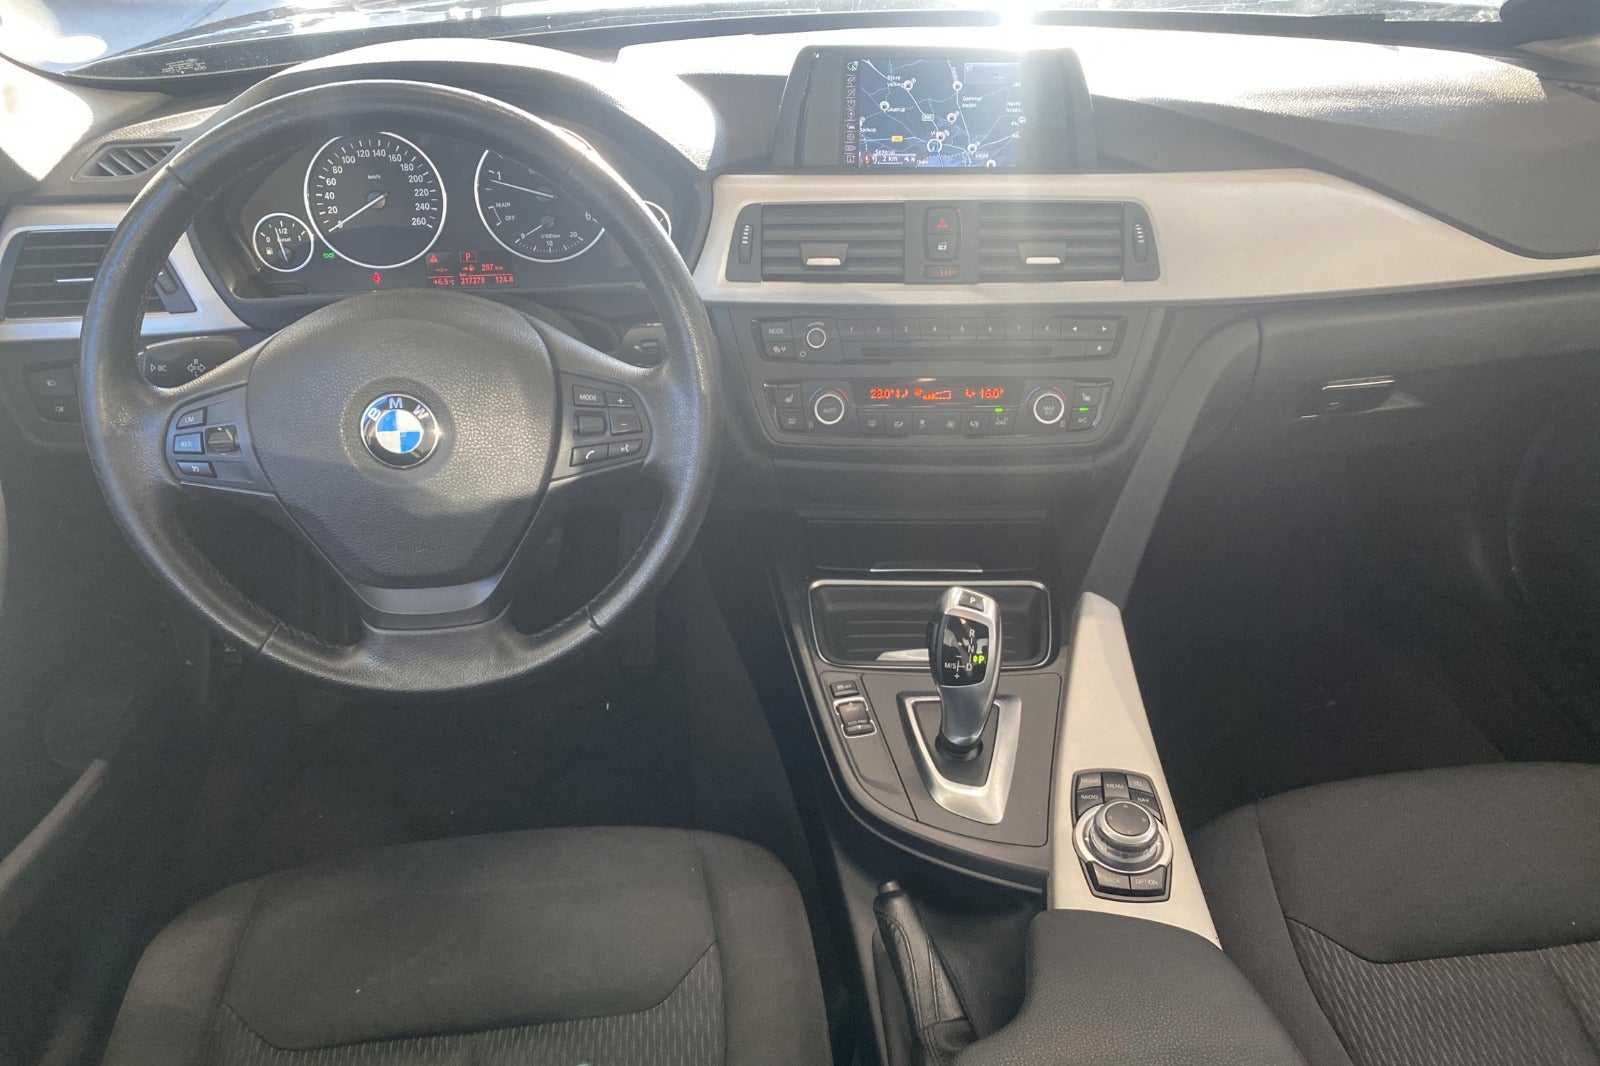 BMW 320d 2,0 aut. Diesel aut. Automatgear modelår 2015 km